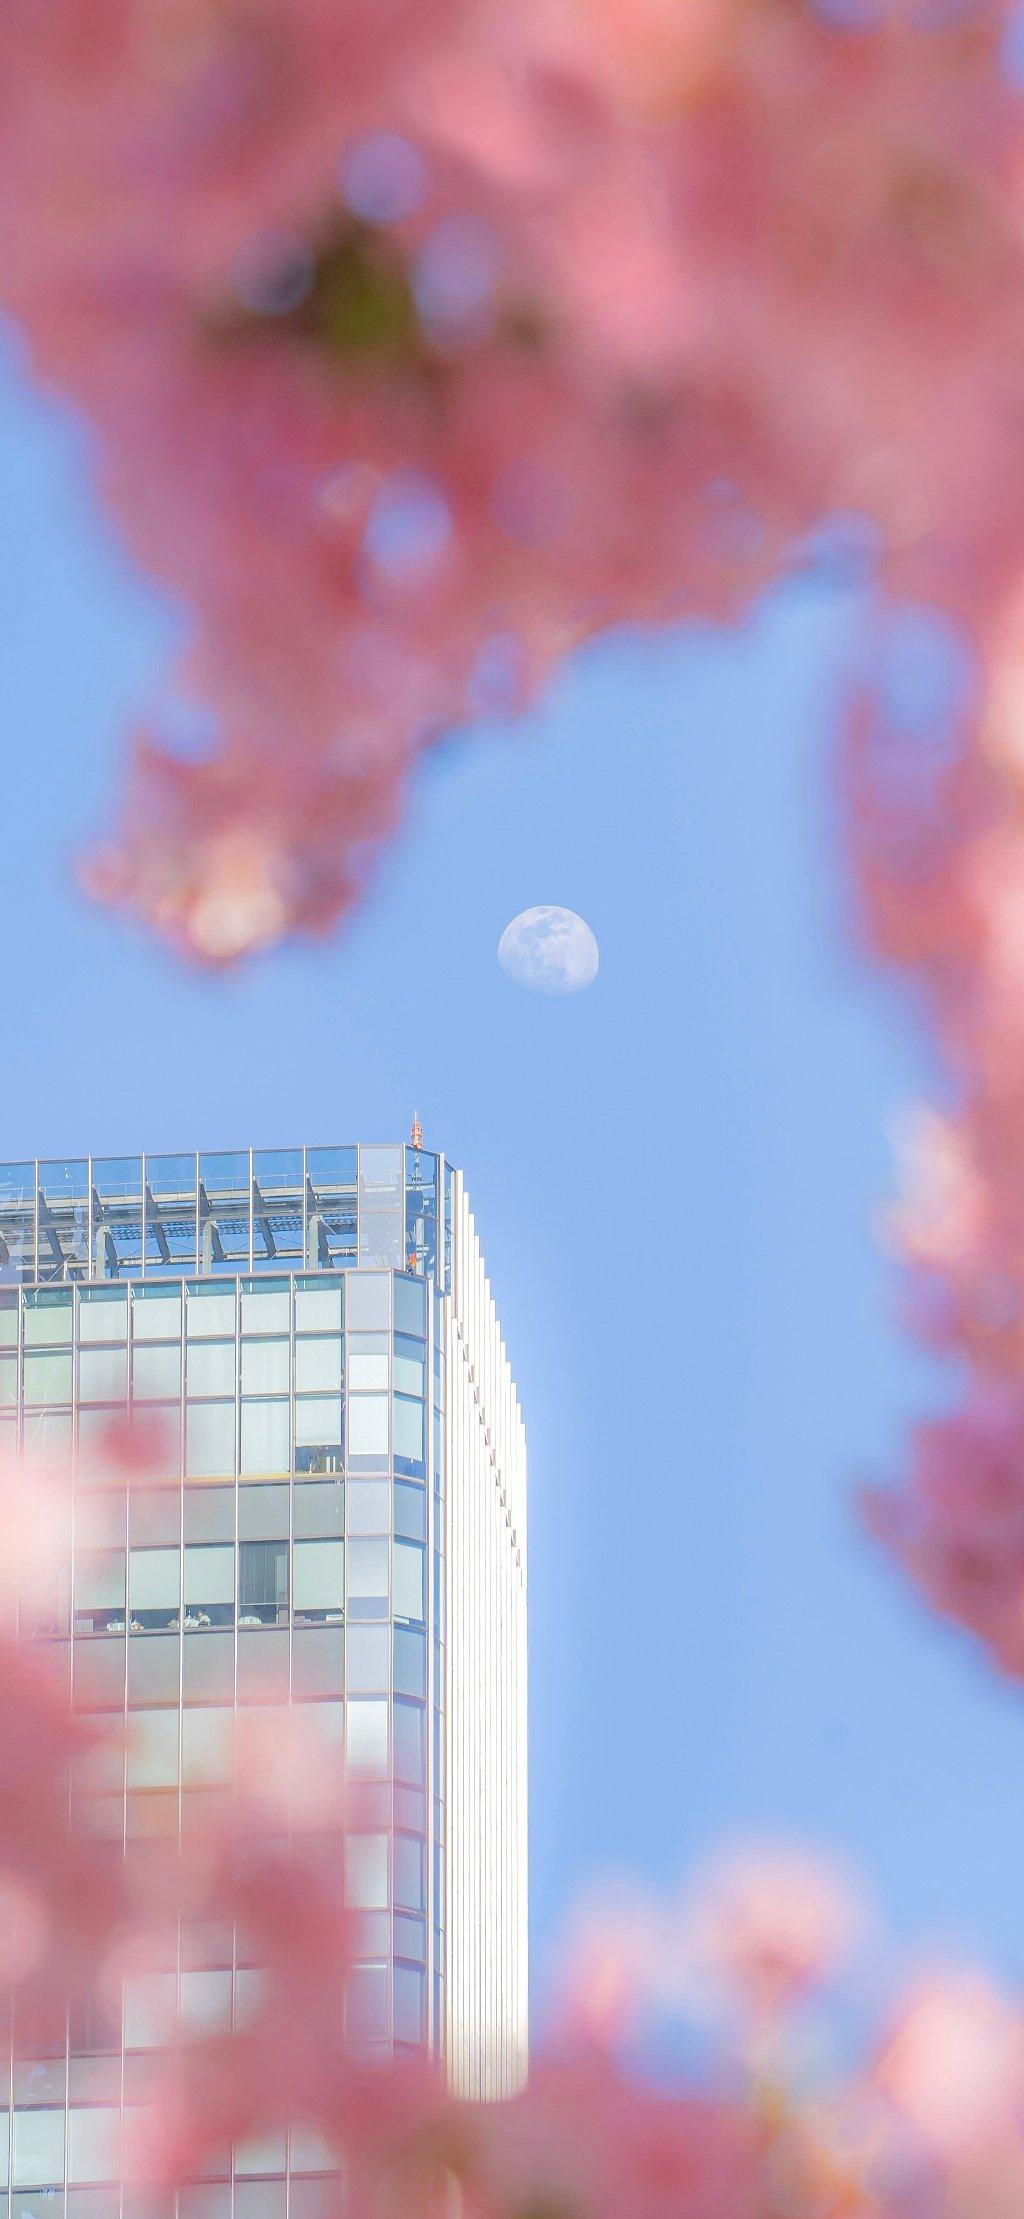 高楼下的樱花与高高悬挂的月